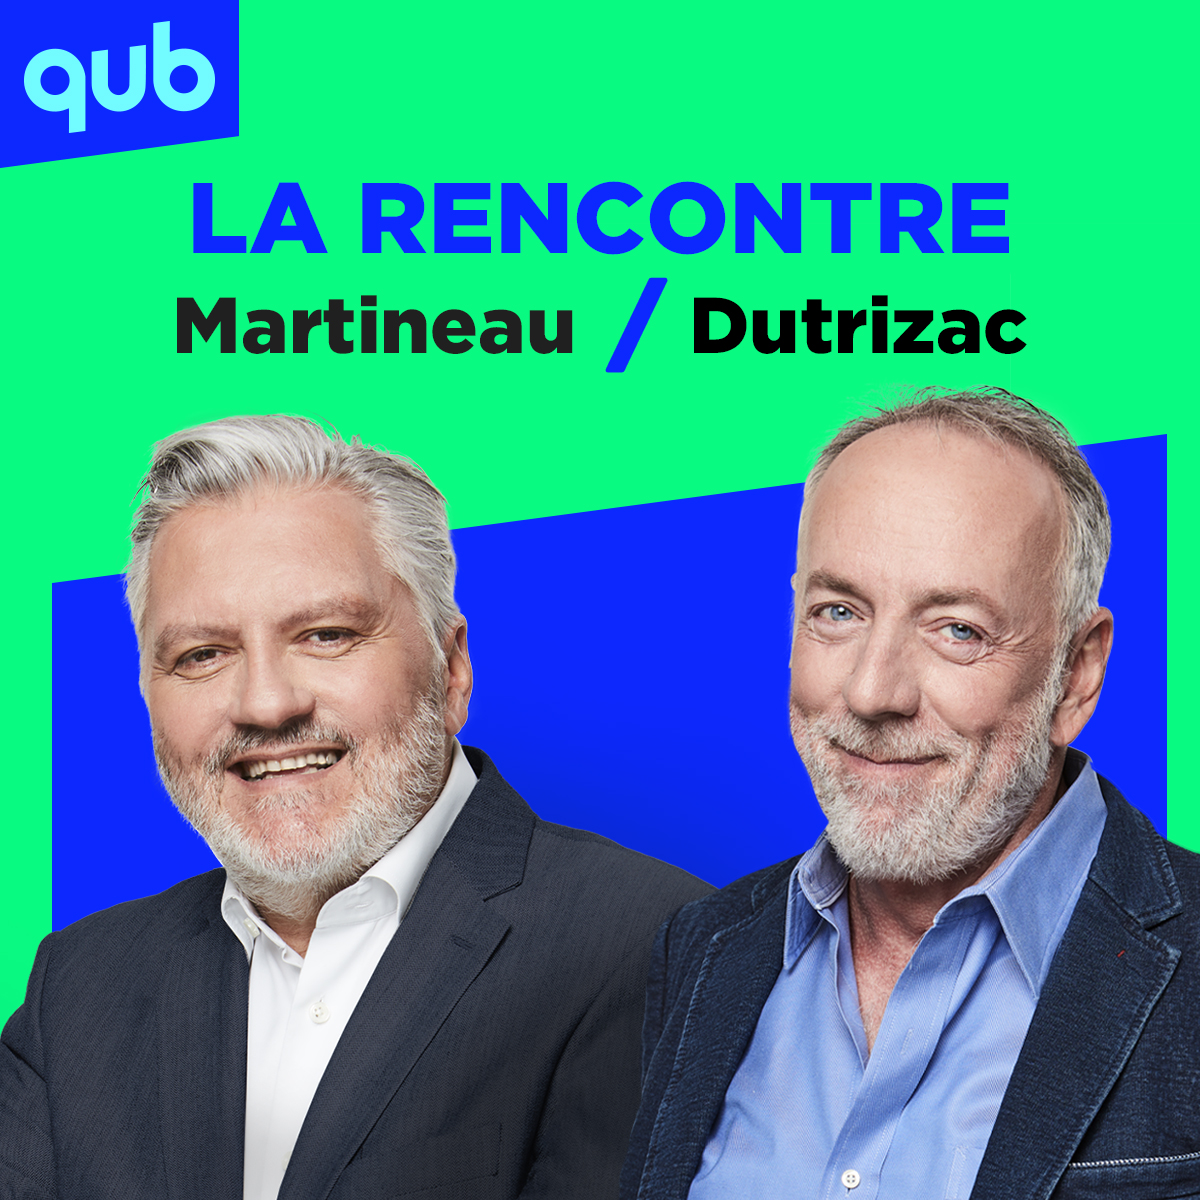 L’État québécois c’est comme un gros sur un La-Z-Boy, dit Martineau